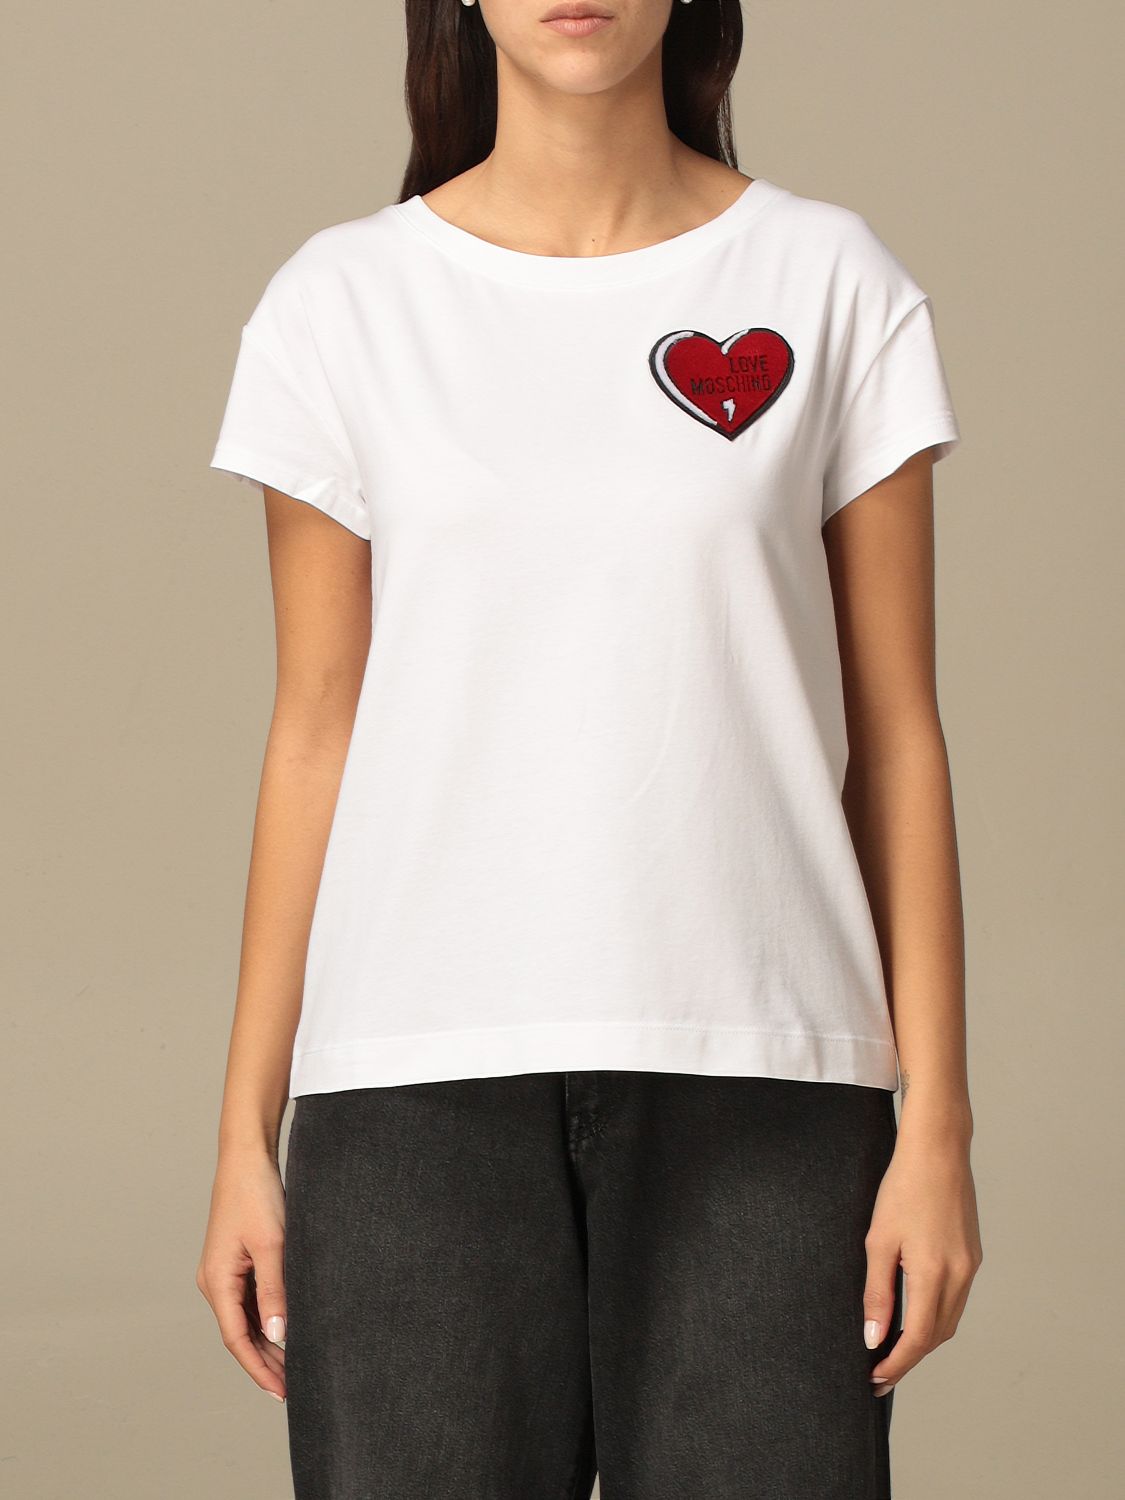 moschino shirt heart